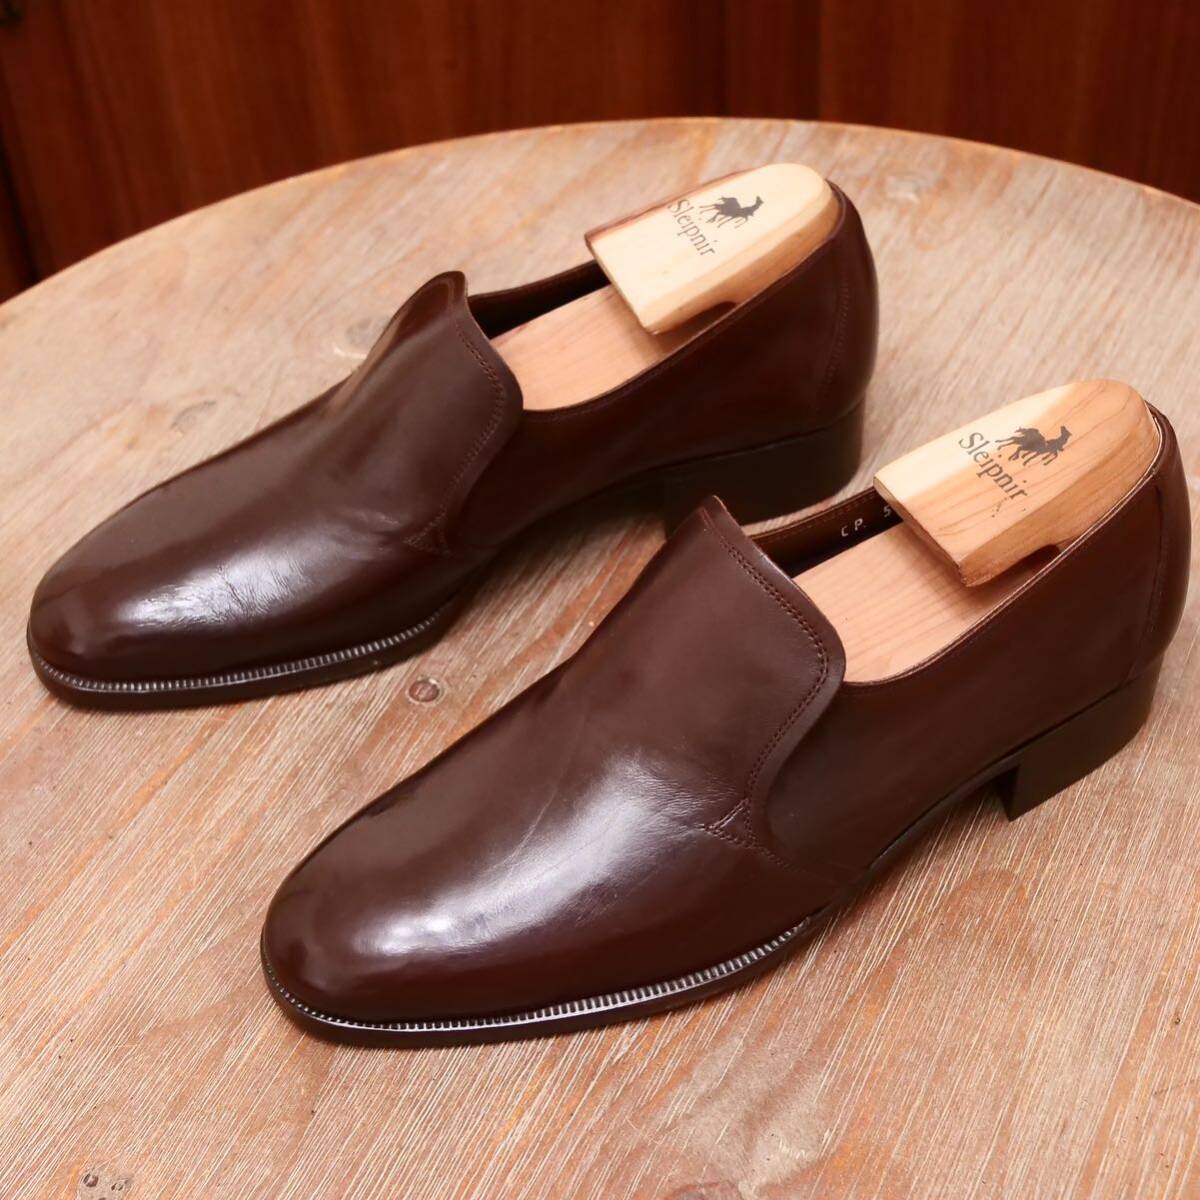  as good as new *[GINZA Yoshinoya] Ginza yo shino ya center goa slip-on shoes 24 business shoes men's leather shoes 